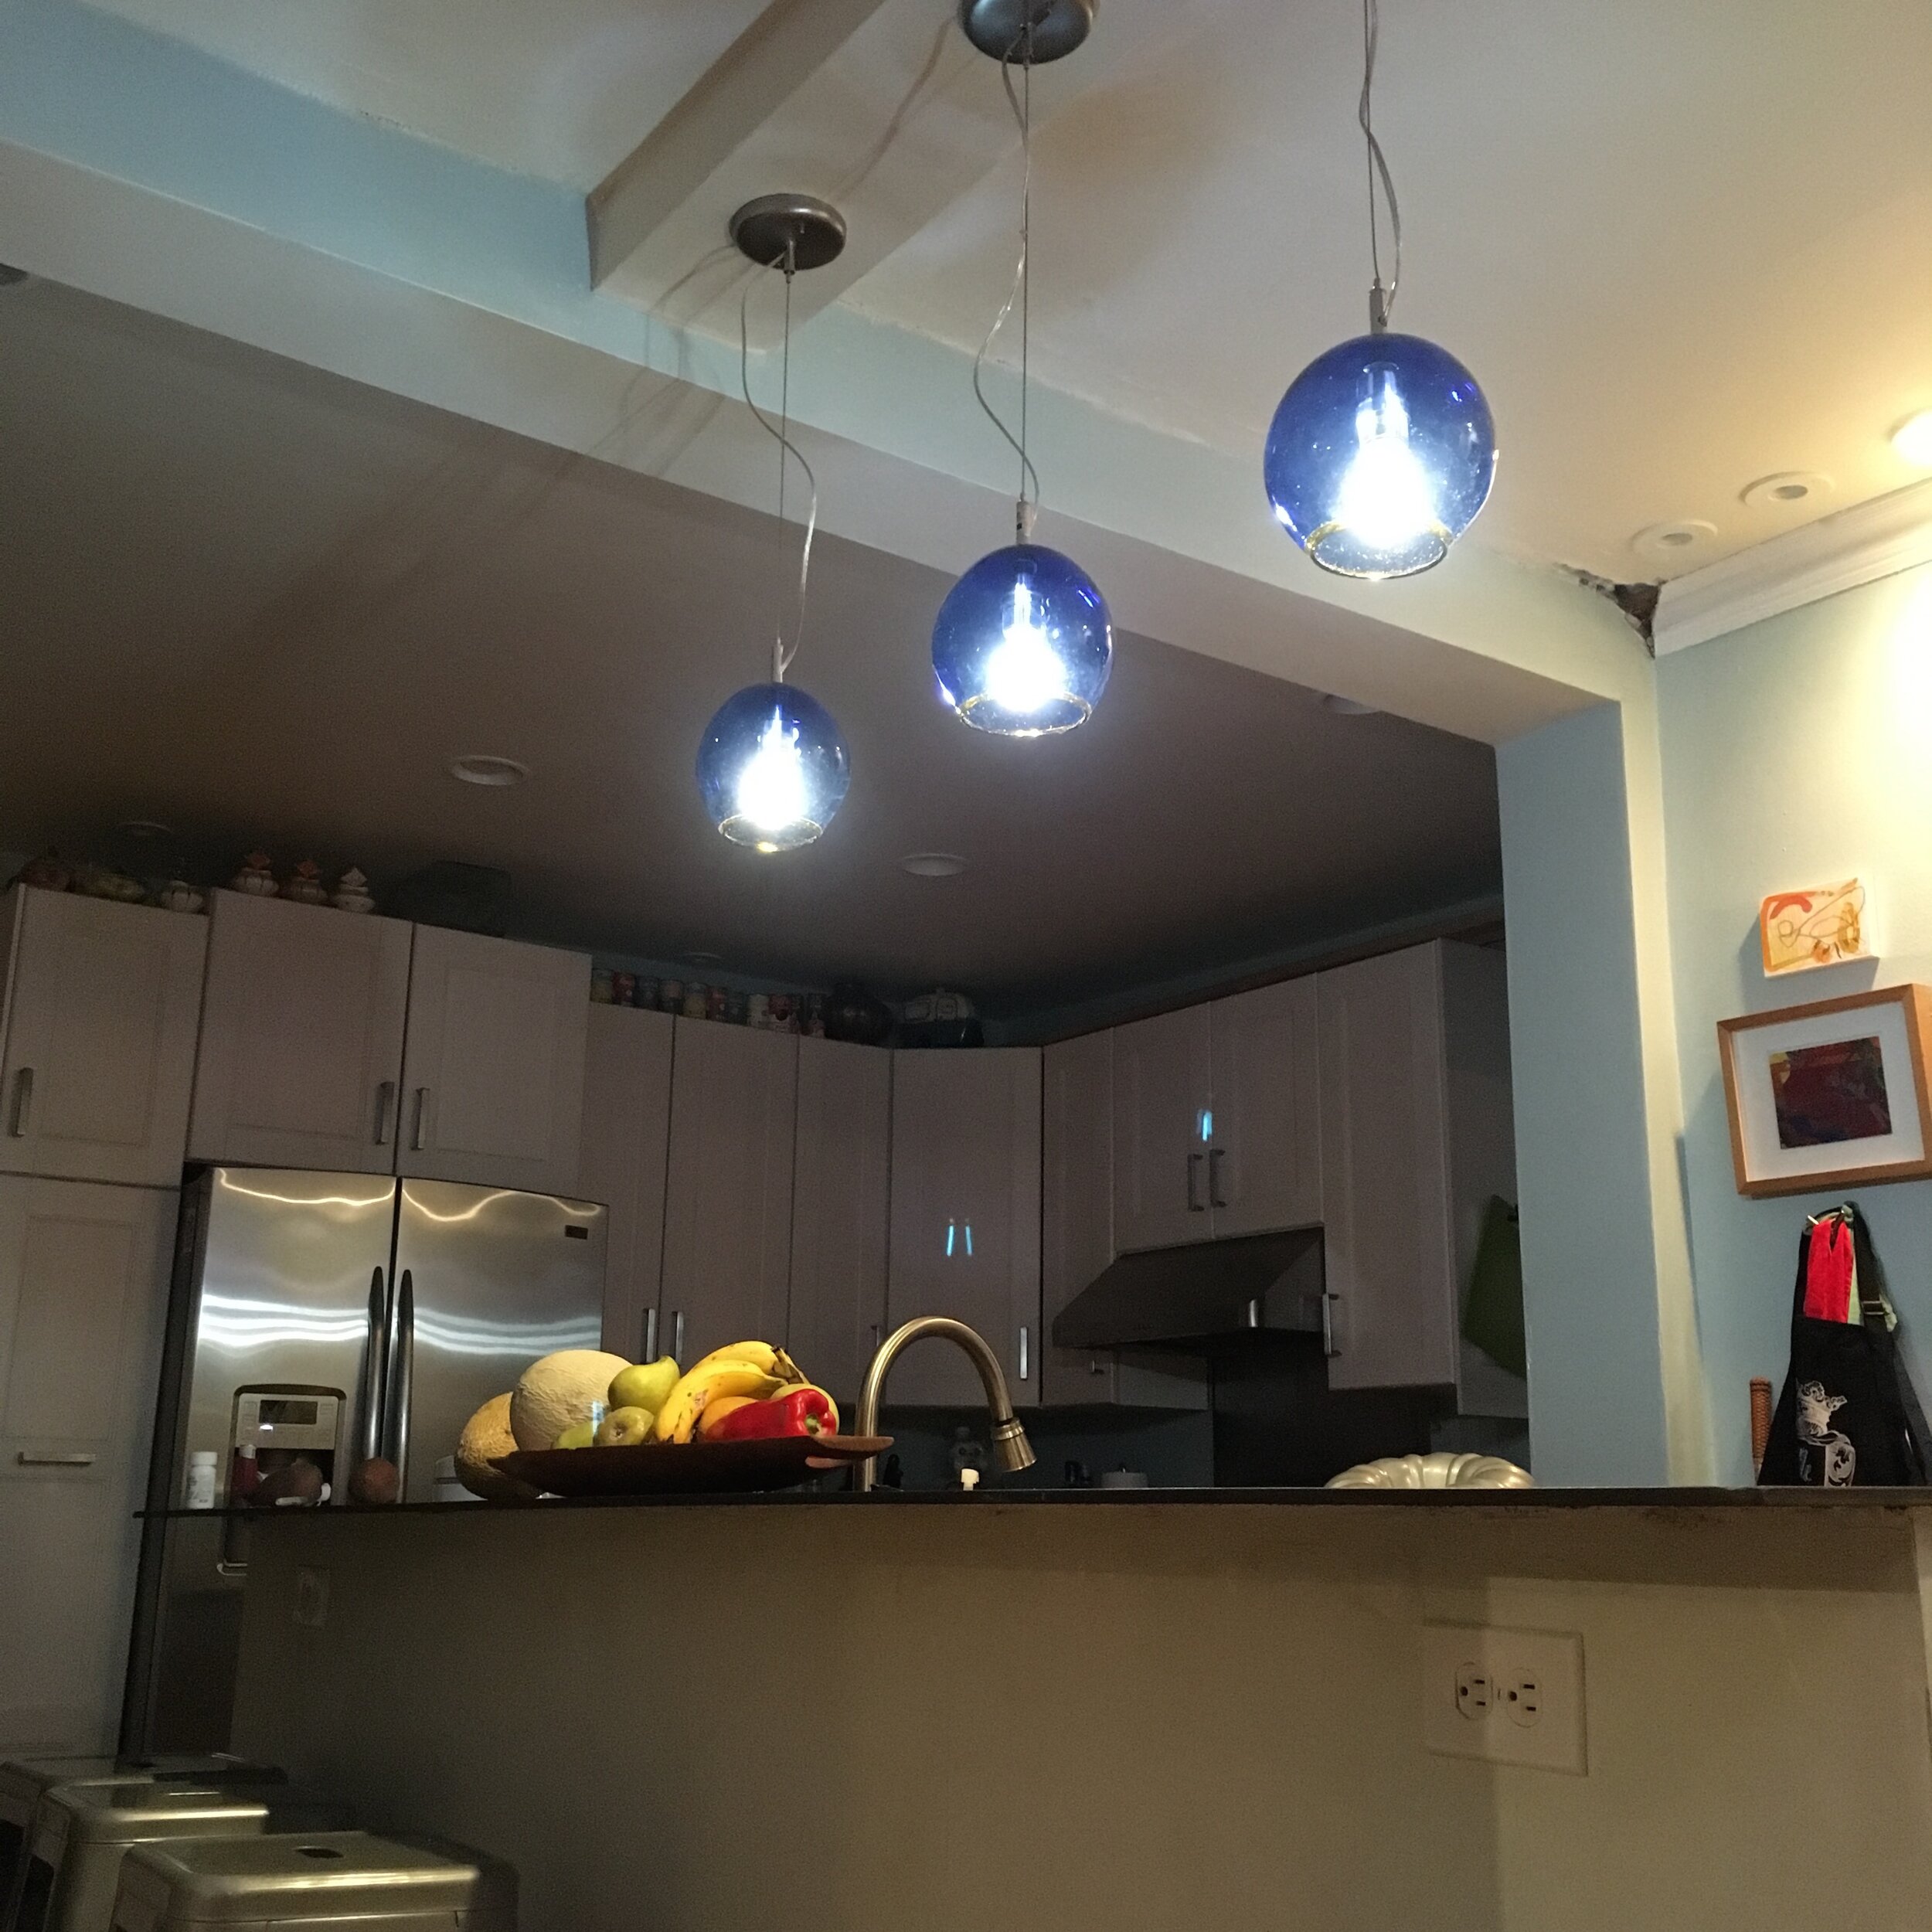 blue globes in kitchen.jpg